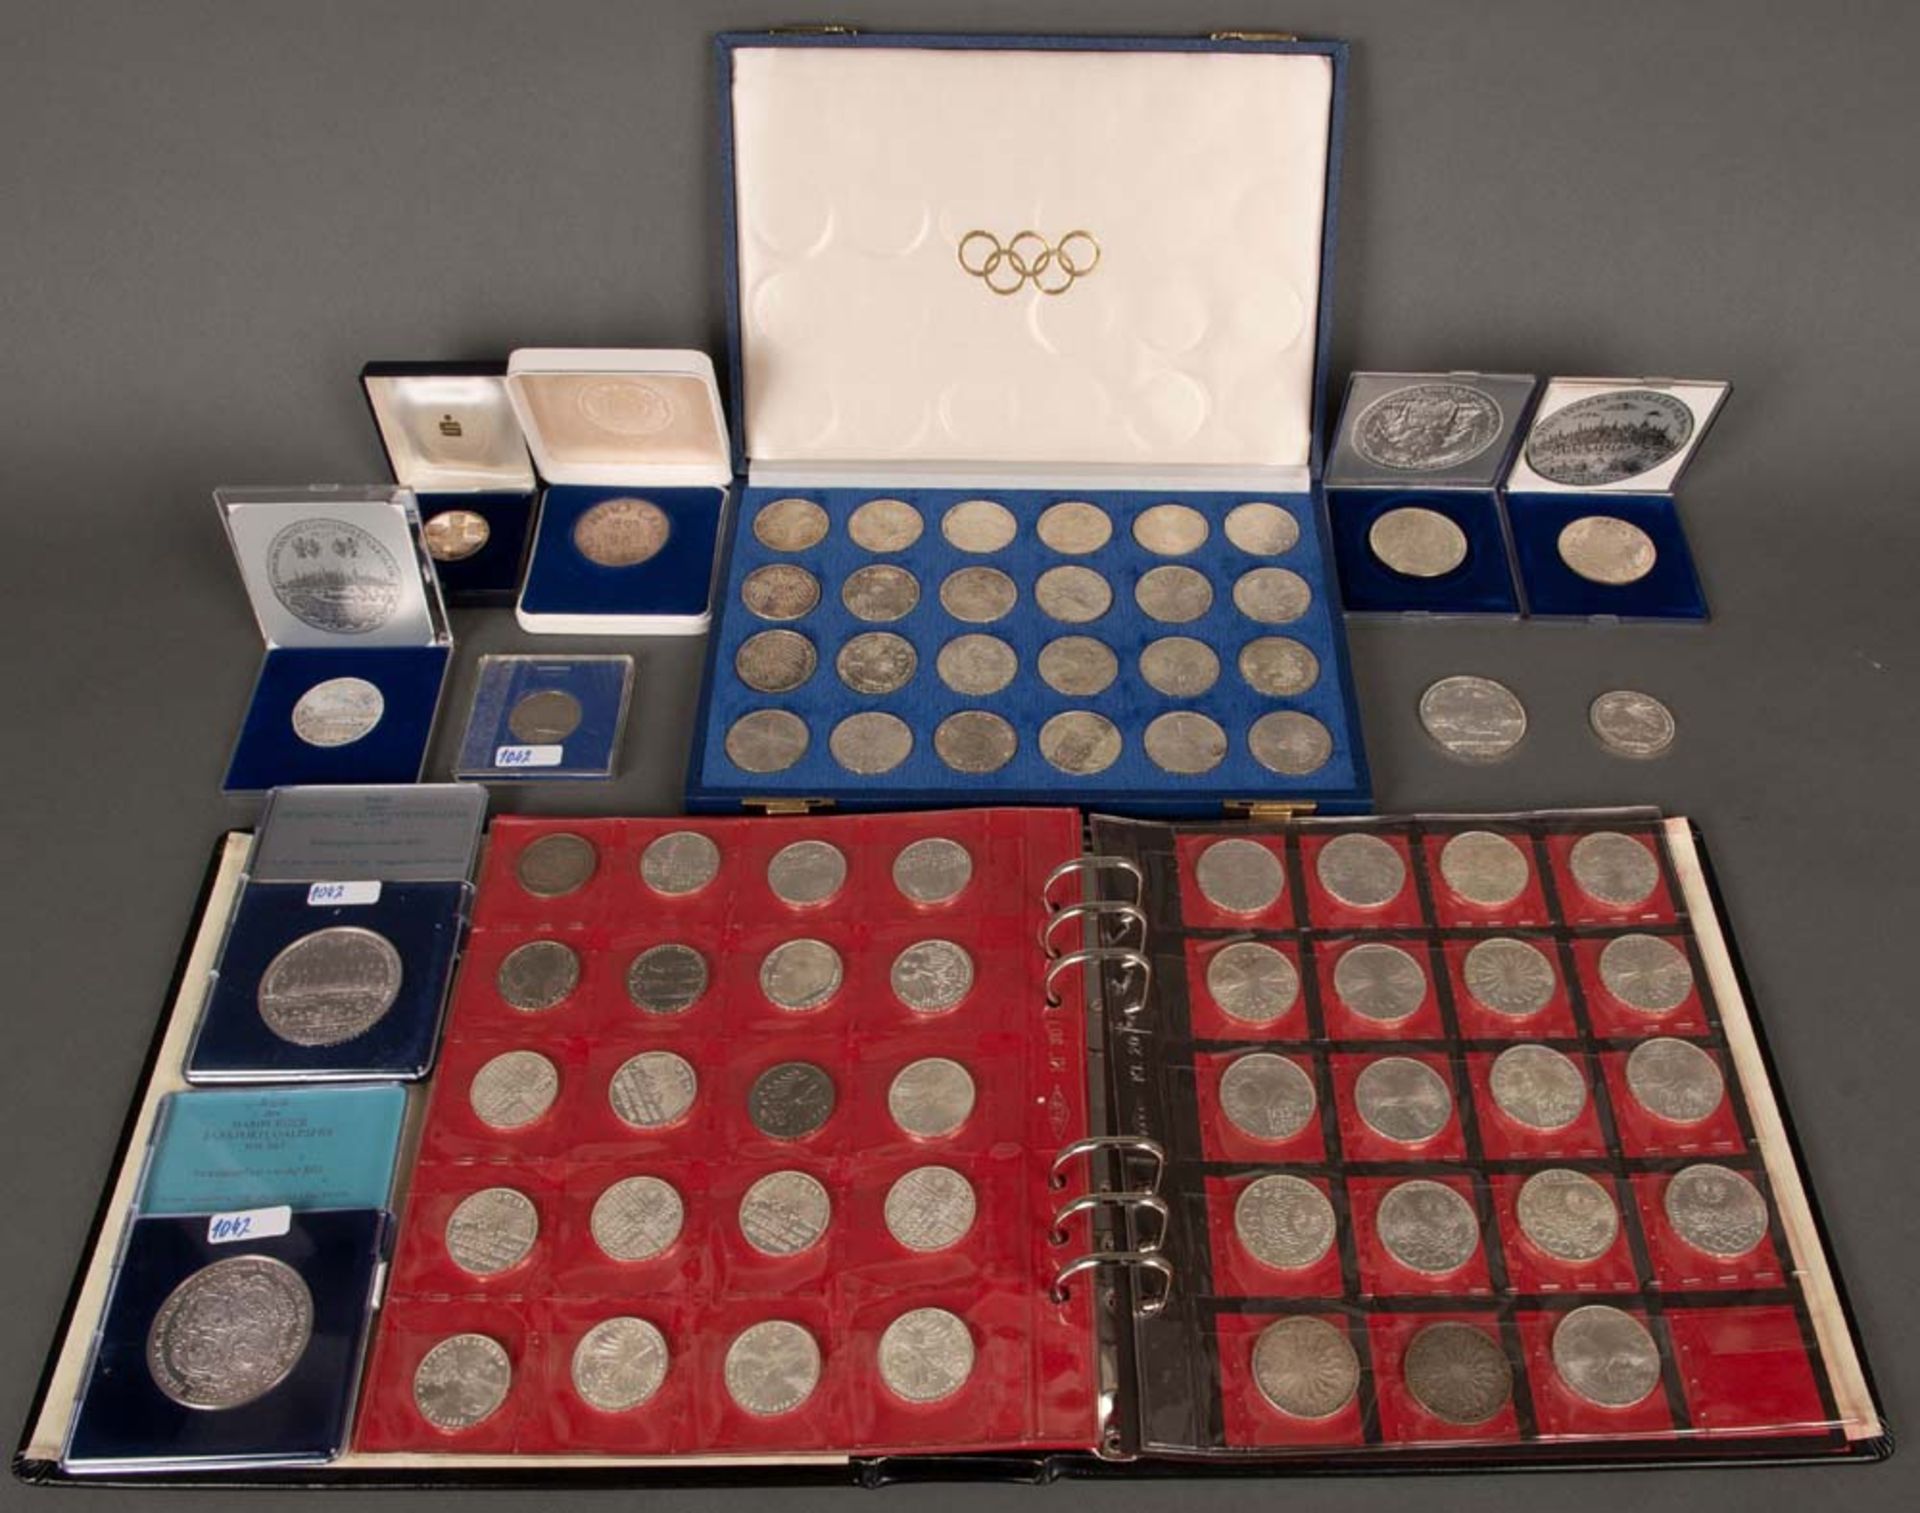 Konvolut Münzen. Silber, ca. 900 g, u.a. 5 bzw. 10 DM-Stücke; sowie Olympia- Münzen 1972.